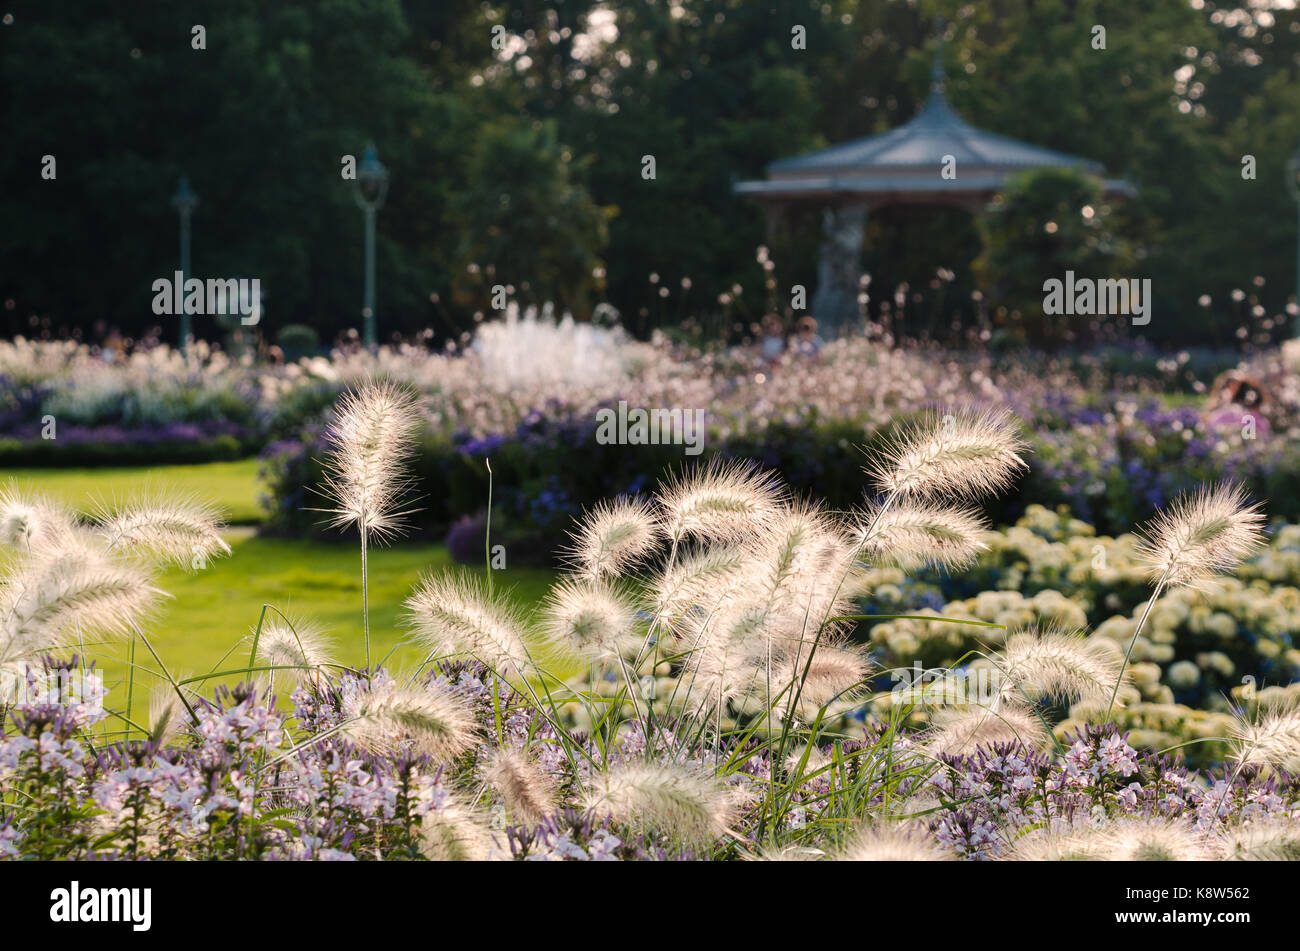 RENNES, FRANCE. 27 août 2017. Le kiosque du Parc du Thabor, vu à travers les parterres de fleurs de la fin de l'été plantés de graminées ornementales. Banque D'Images